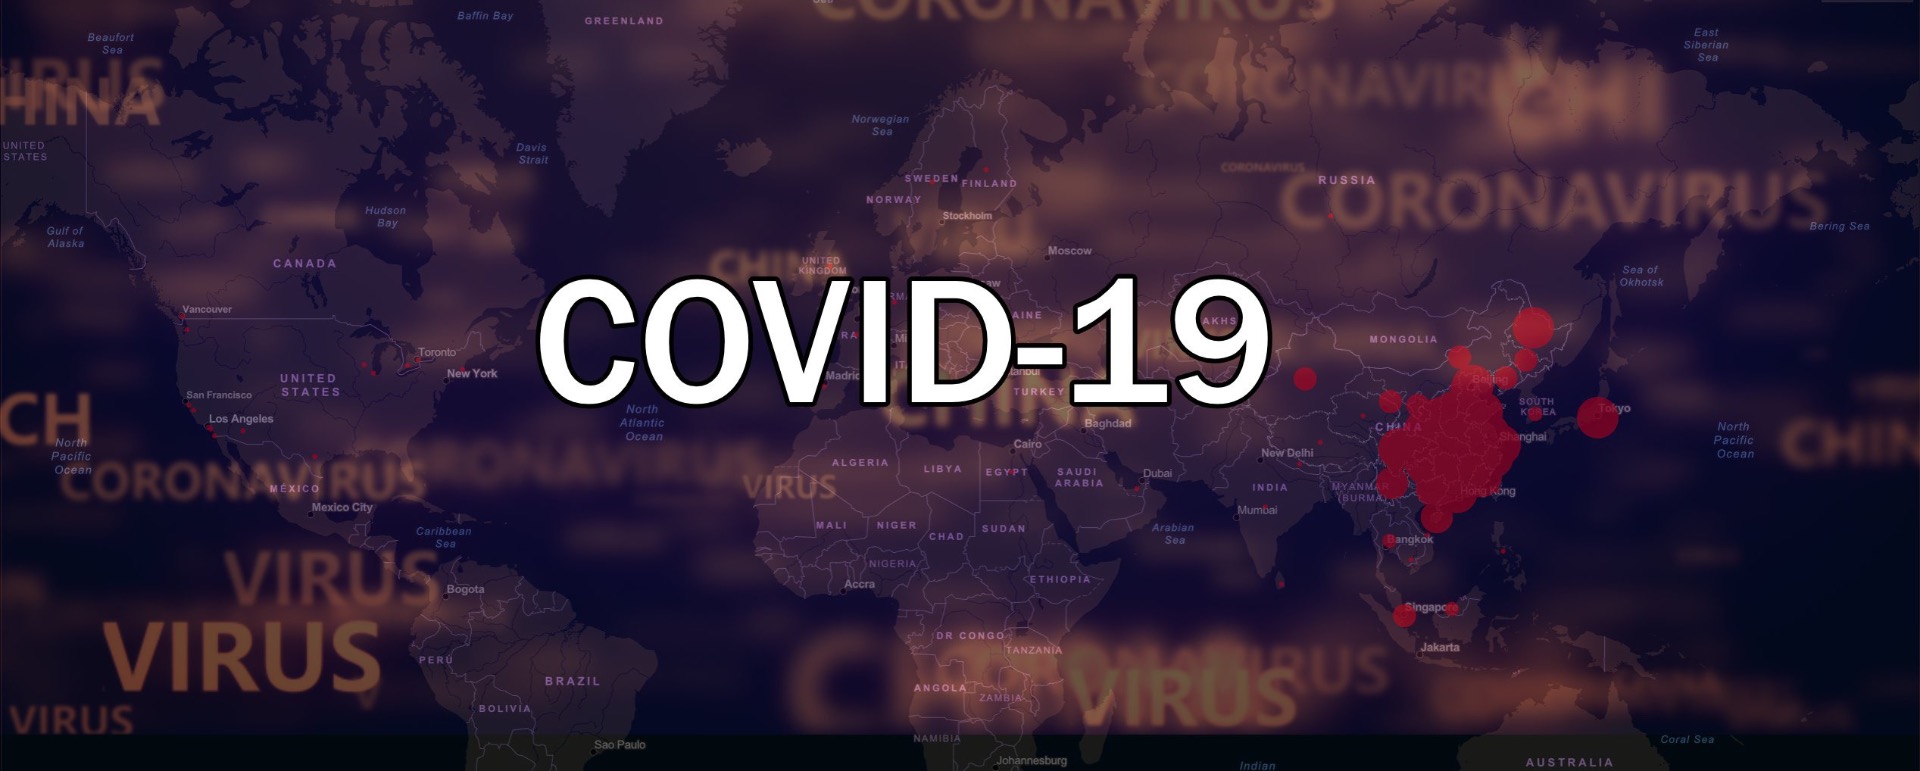 Precautions for COVID-19 - Image 1